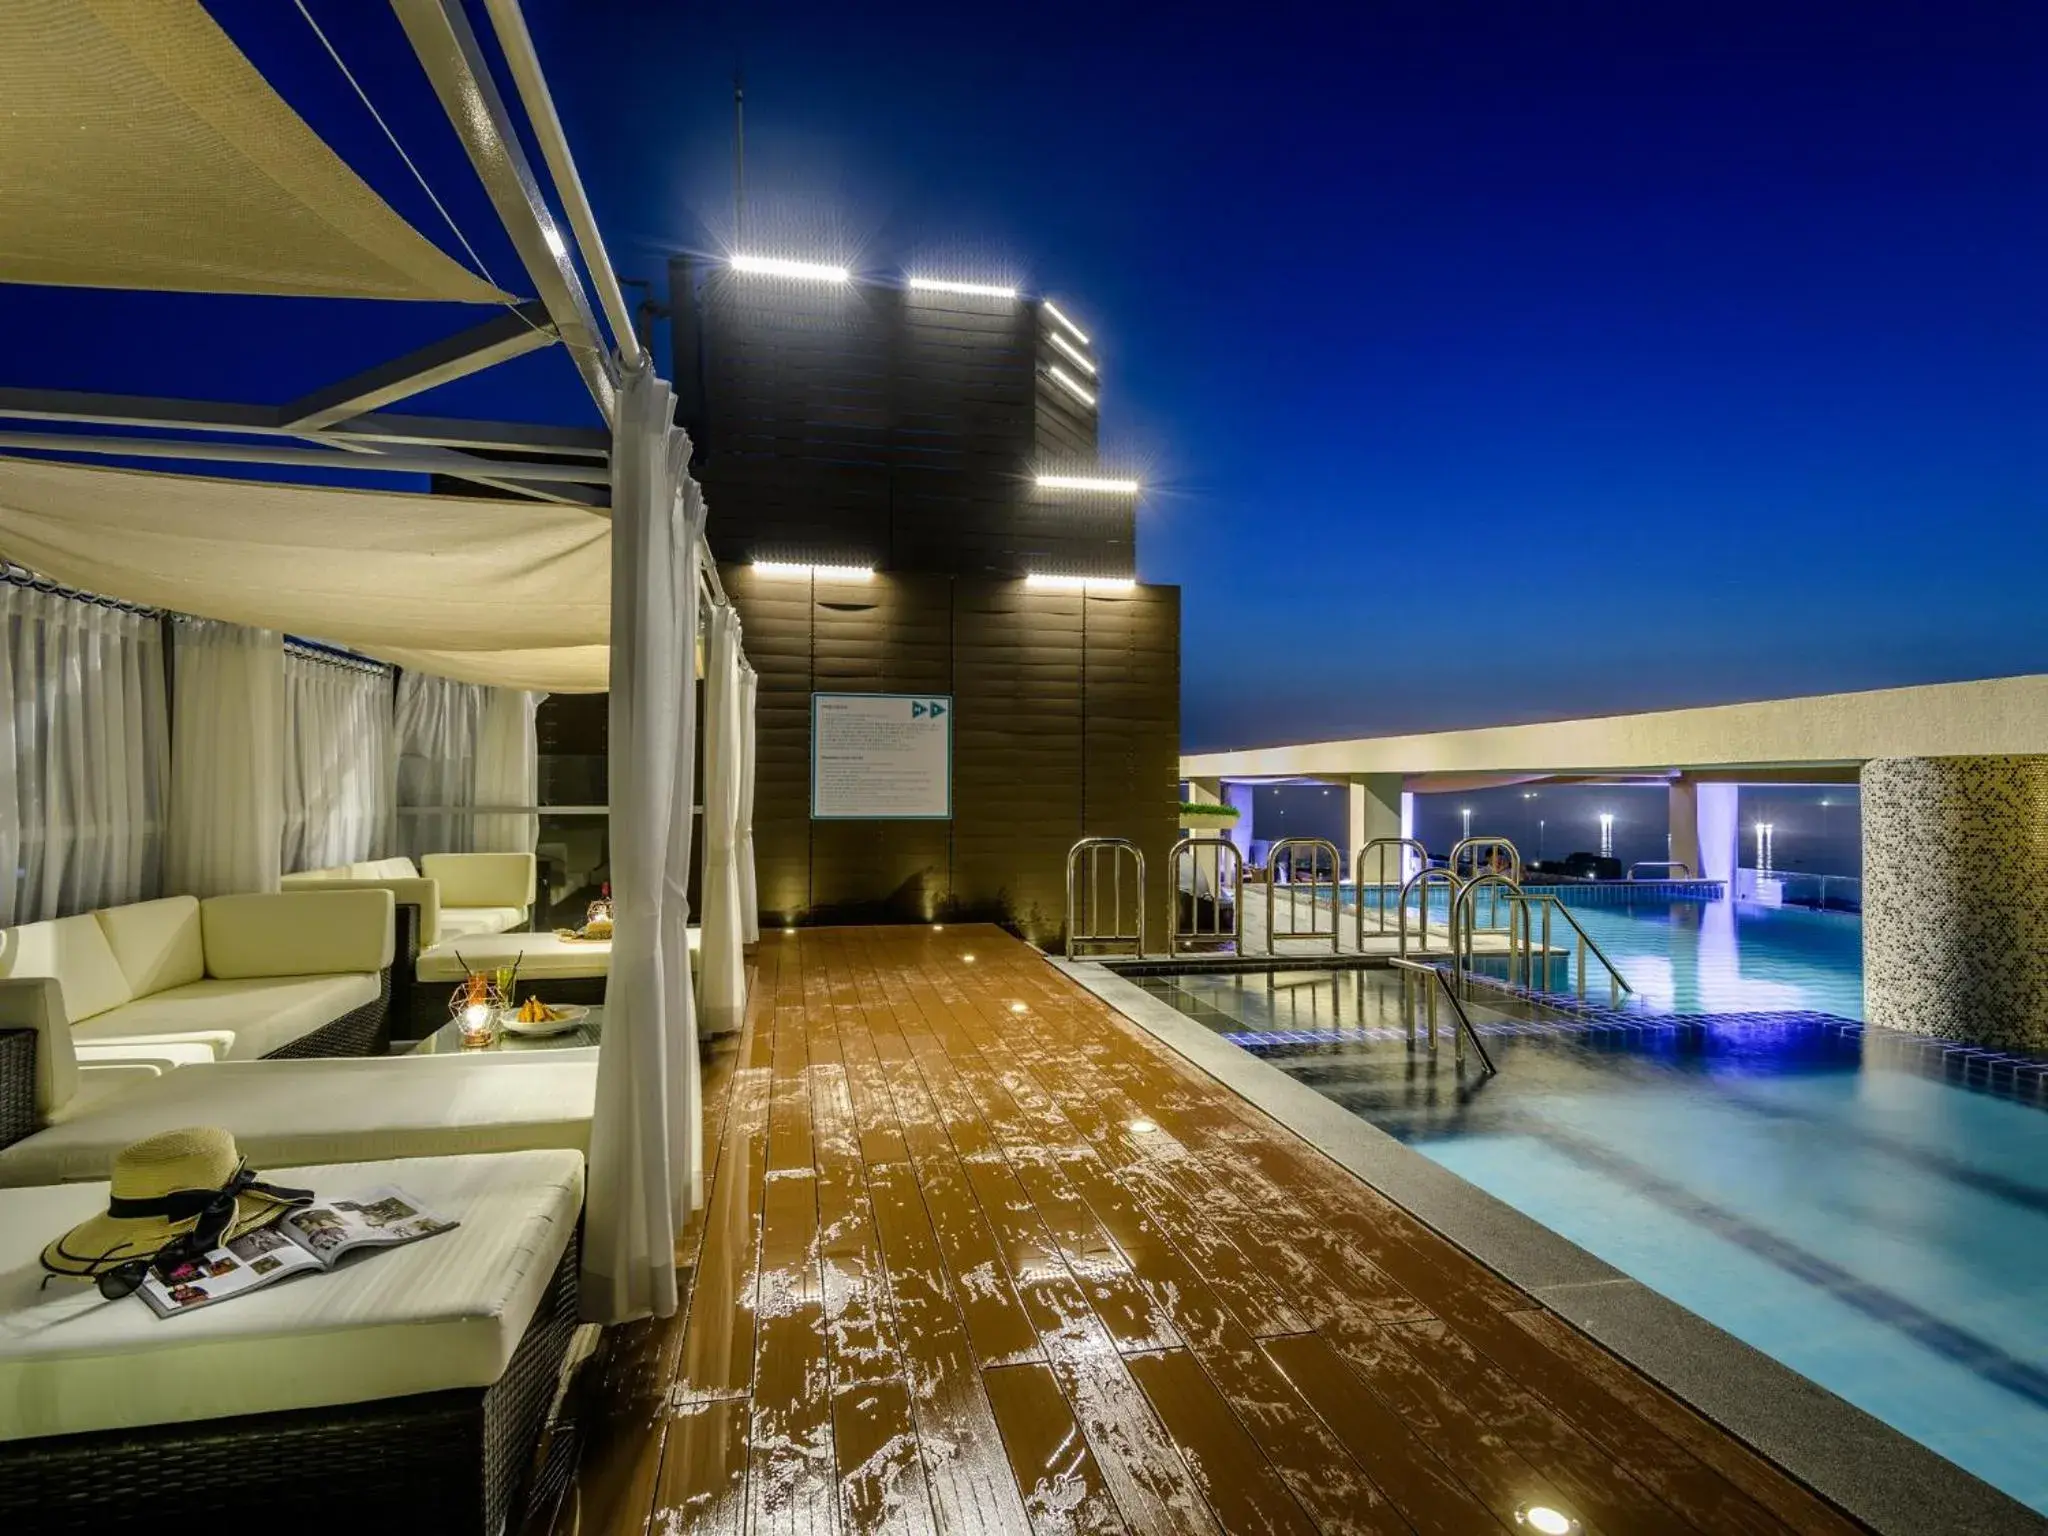 Balcony/Terrace, Swimming Pool in Grabel Hotel